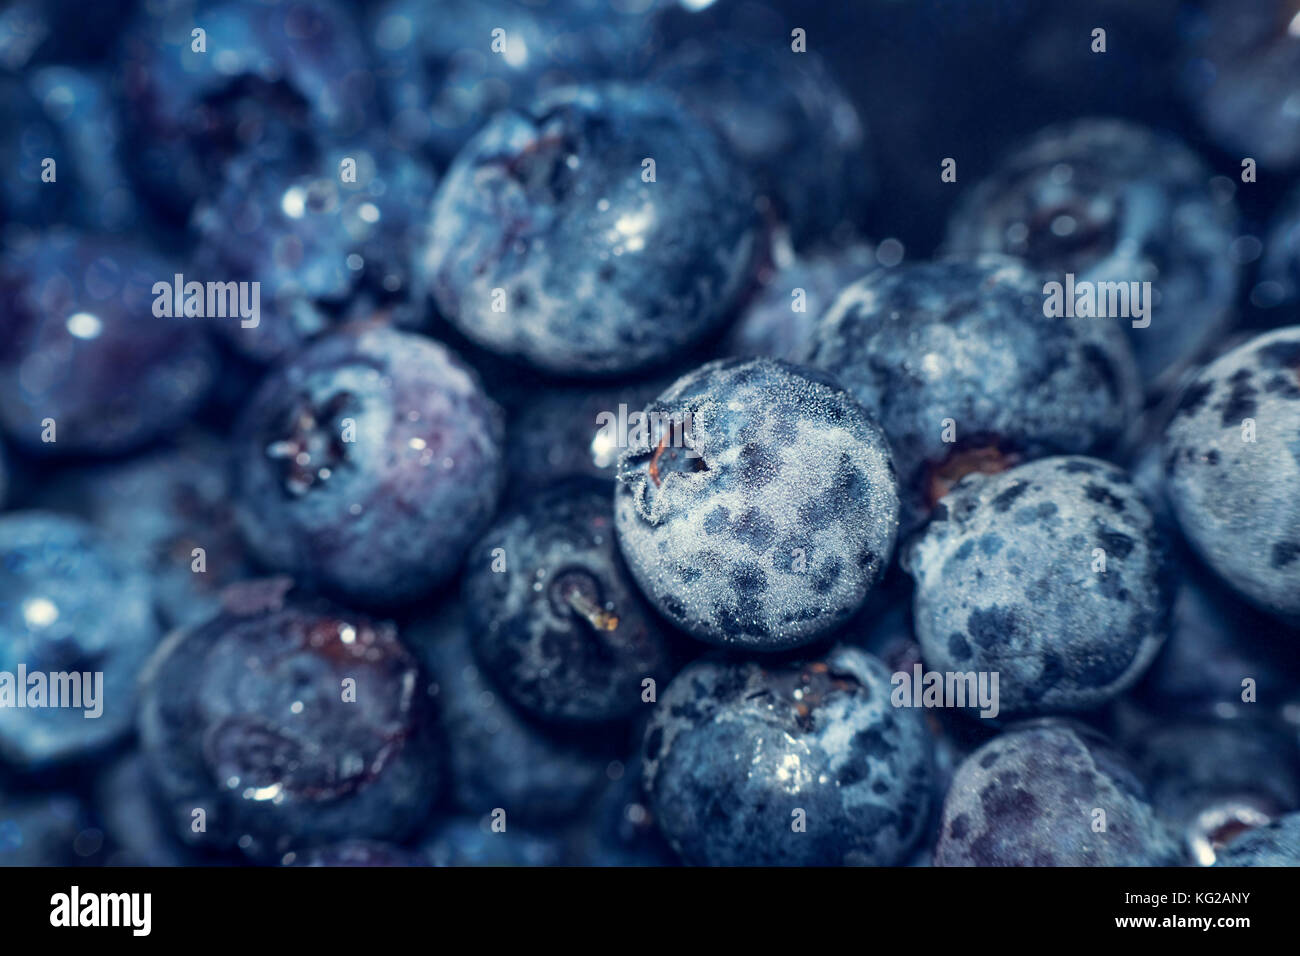 Huckleberry bleu gelé également connu sous le nom de Tall, marécage ou élevé. blueberry bleu congelé de fruits. fruits froids background Banque D'Images